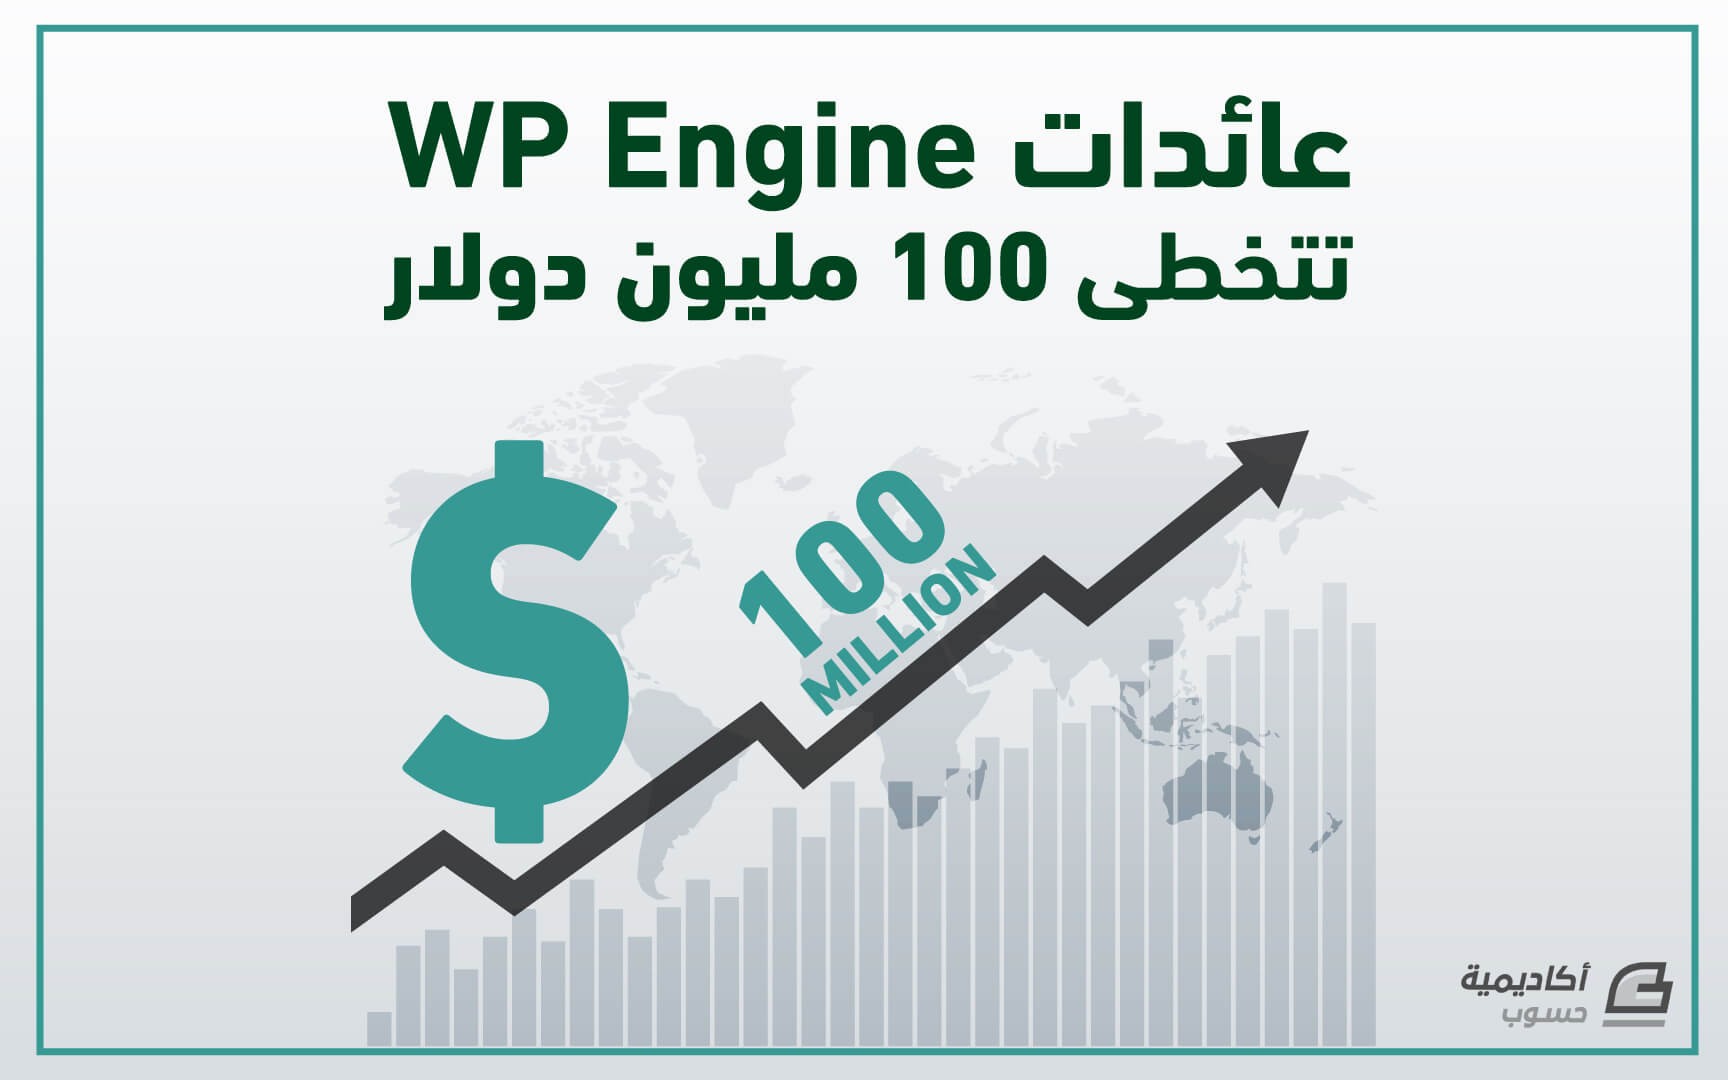 مزيد من المعلومات حول "عائدات WP Engine تتخطى 100 مليون دولار"